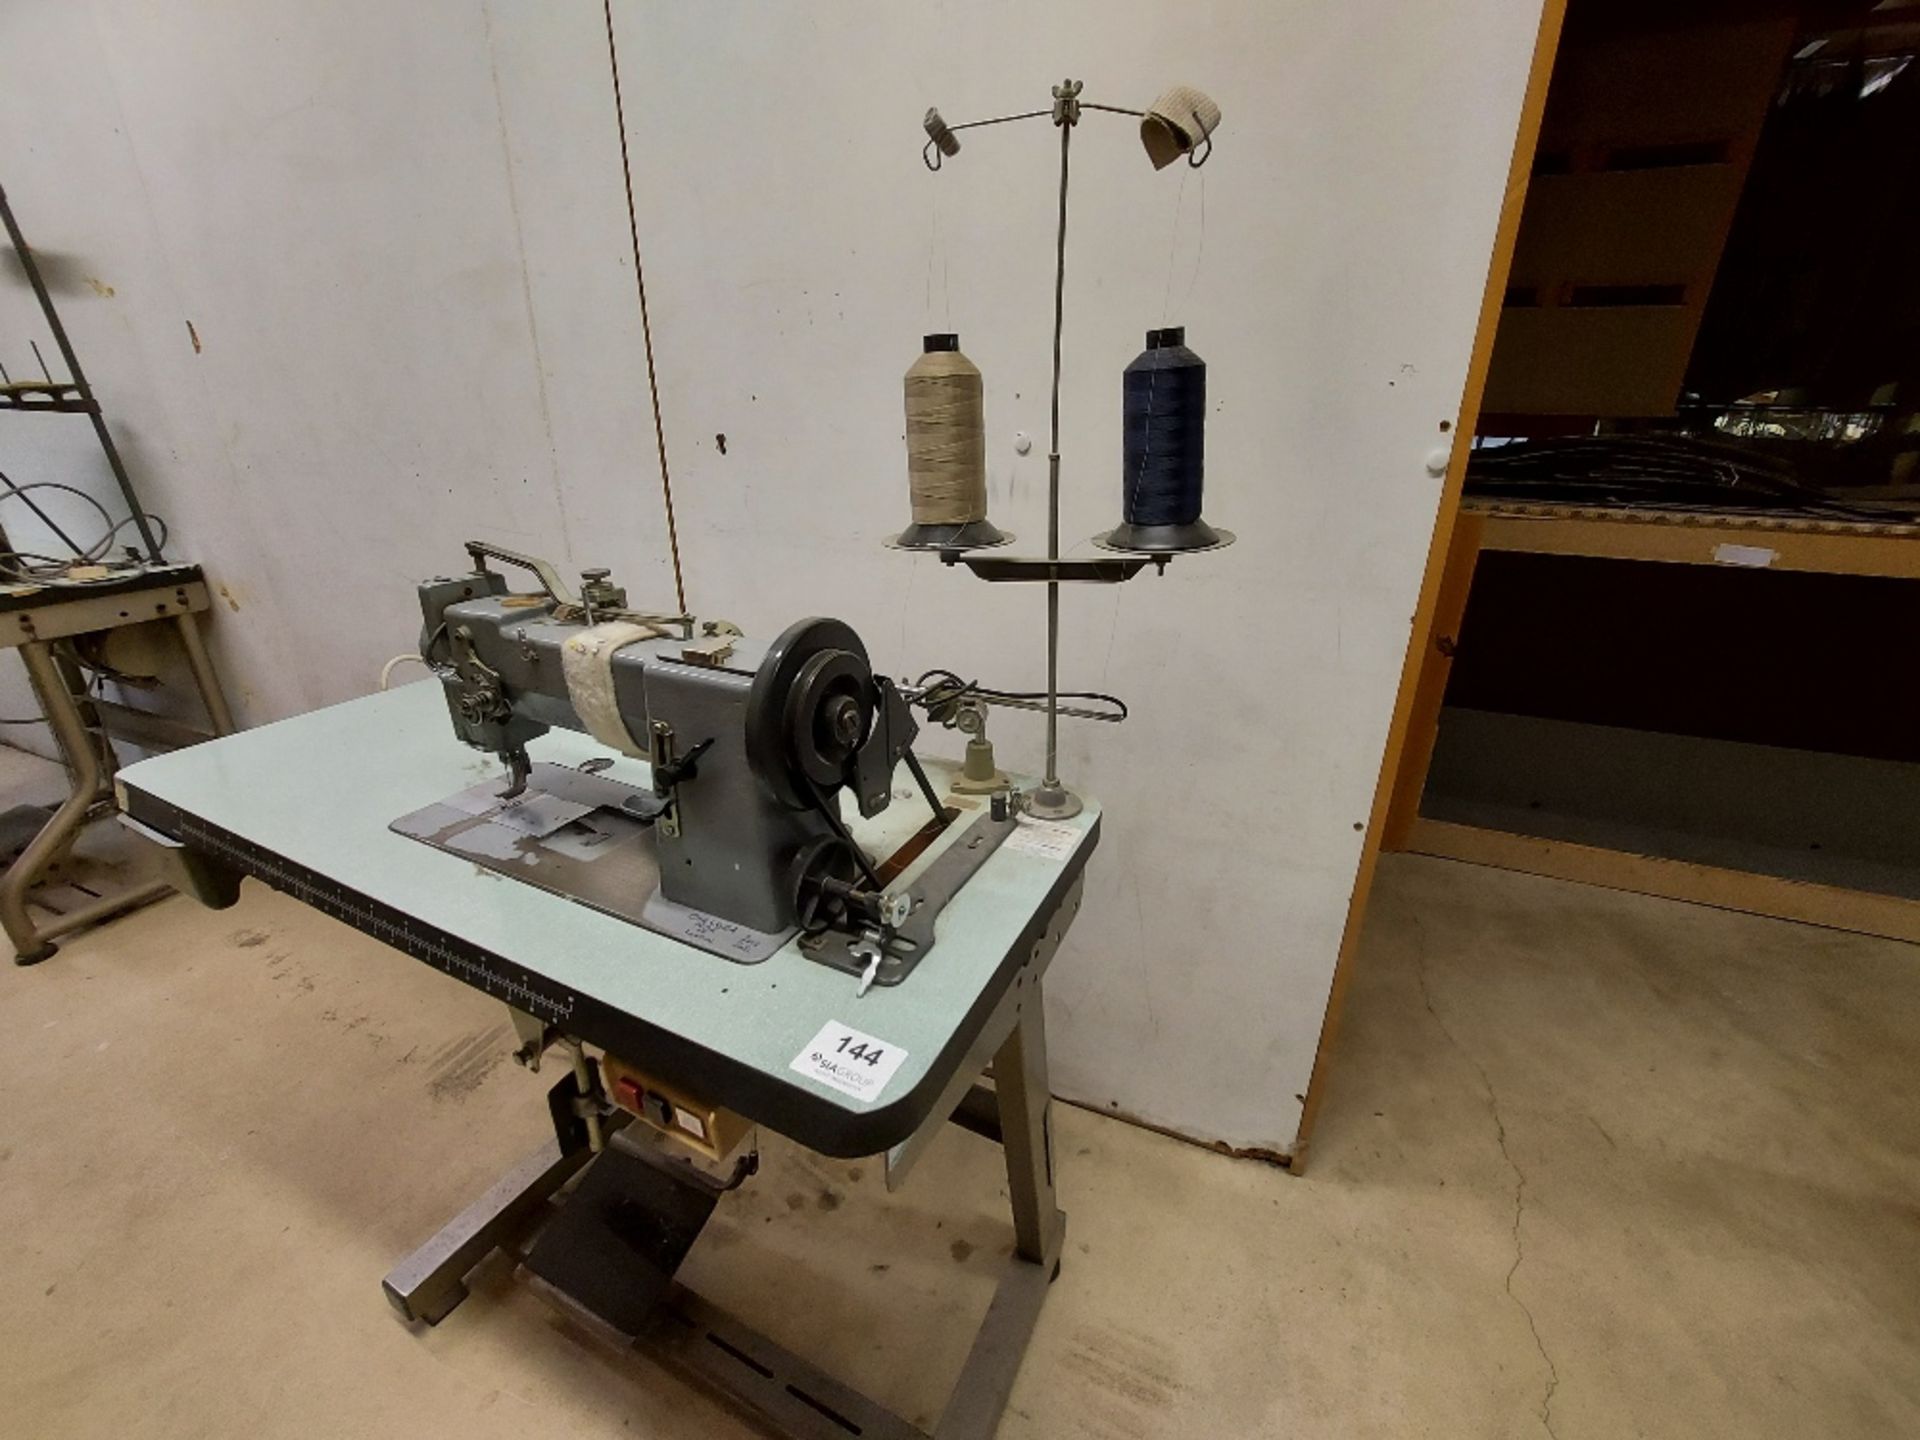 Adler 167-Gk-373 Walking Foot Sewing Machine - Image 2 of 5